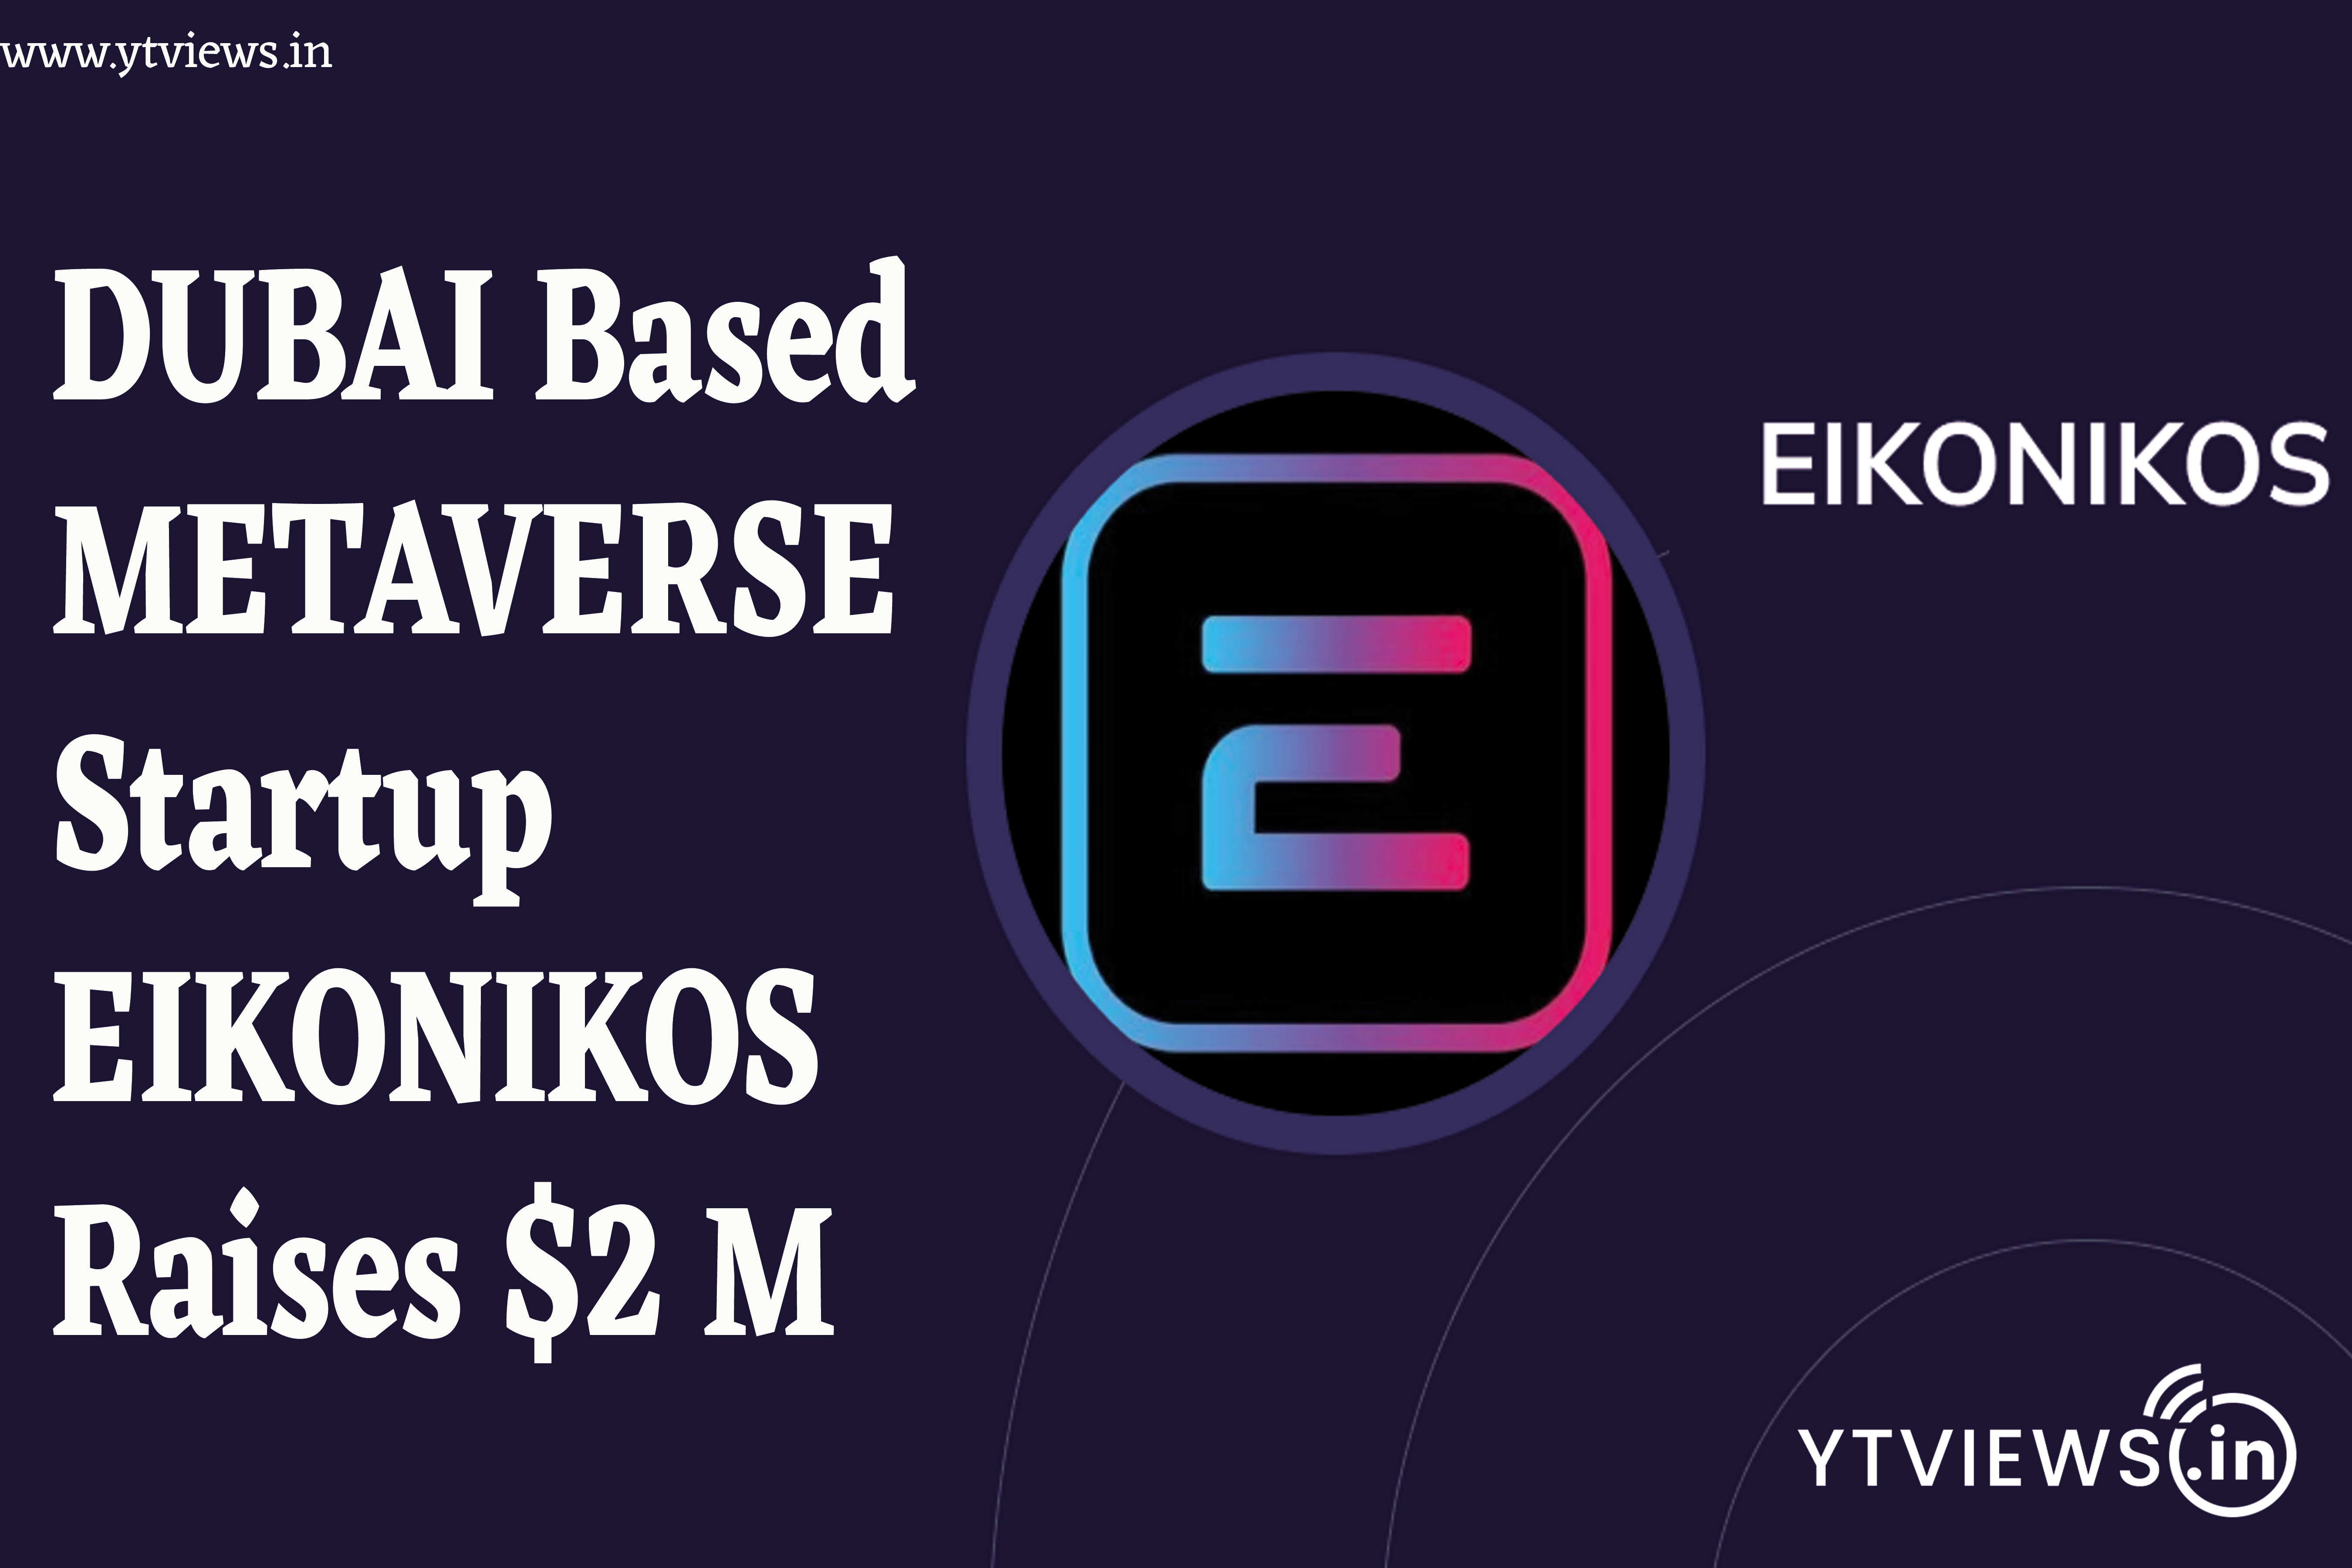 Dubai-based metaverse startup Eikonikos raises $2m